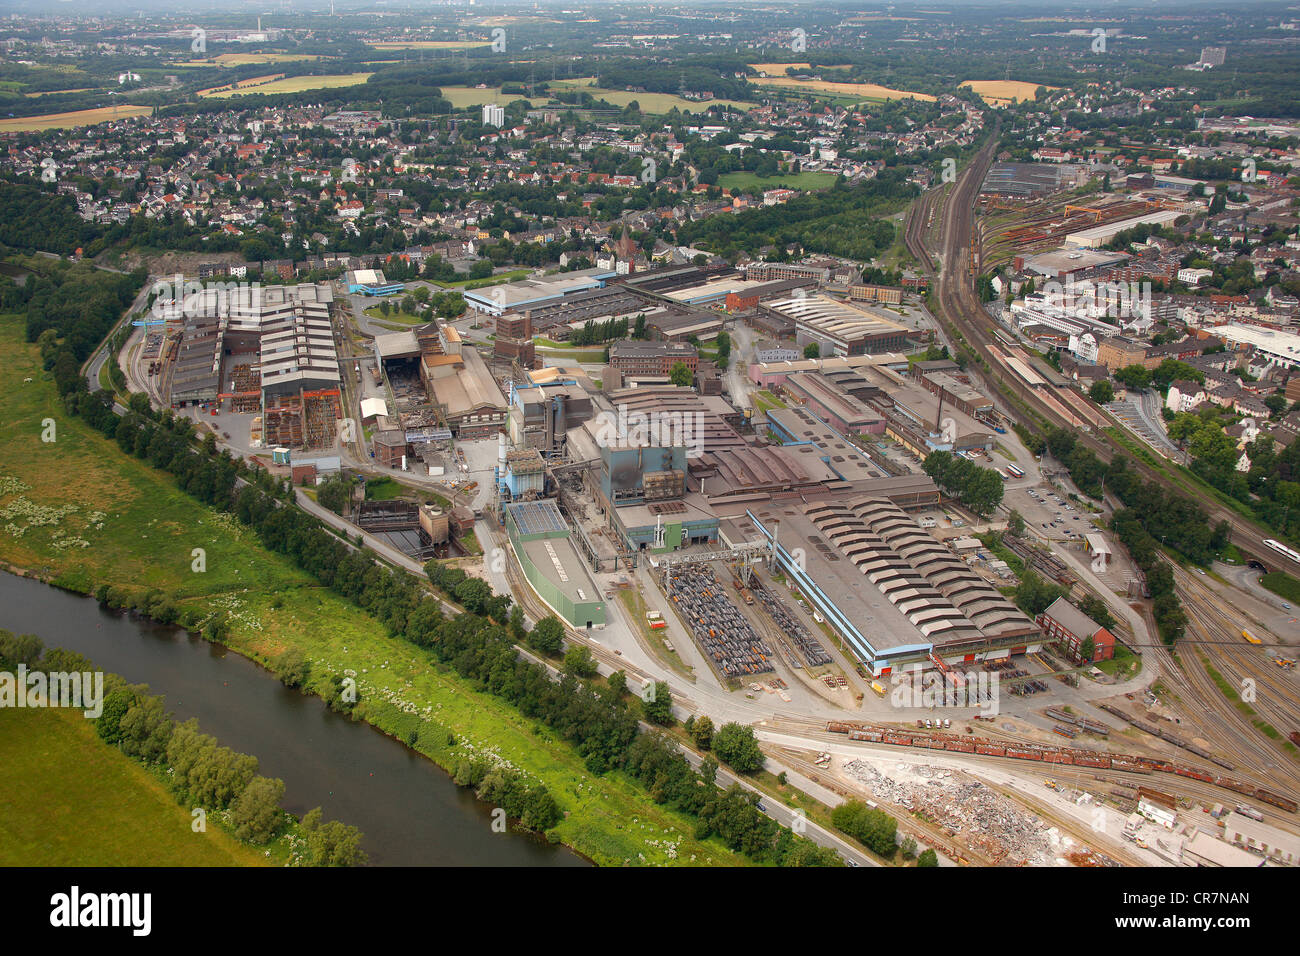 Vista aerea, Deutsche Edelstahlwerke, Tedesco steel works, Witten, zona della Ruhr, Renania settentrionale-Vestfalia, Germania, Europa Foto Stock